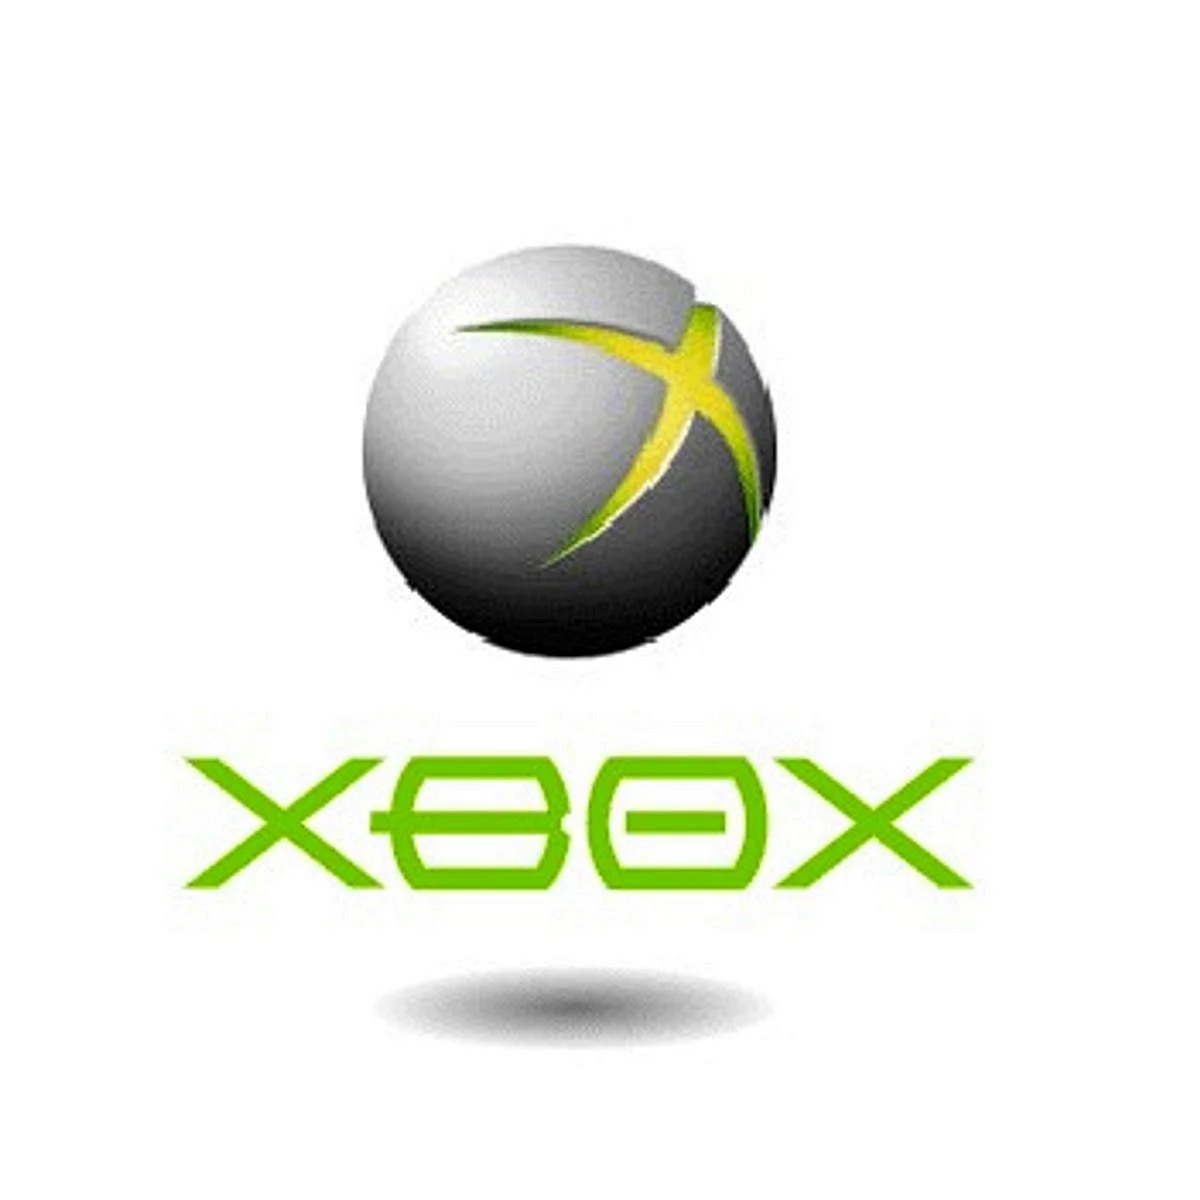 Xbox logotype Concept